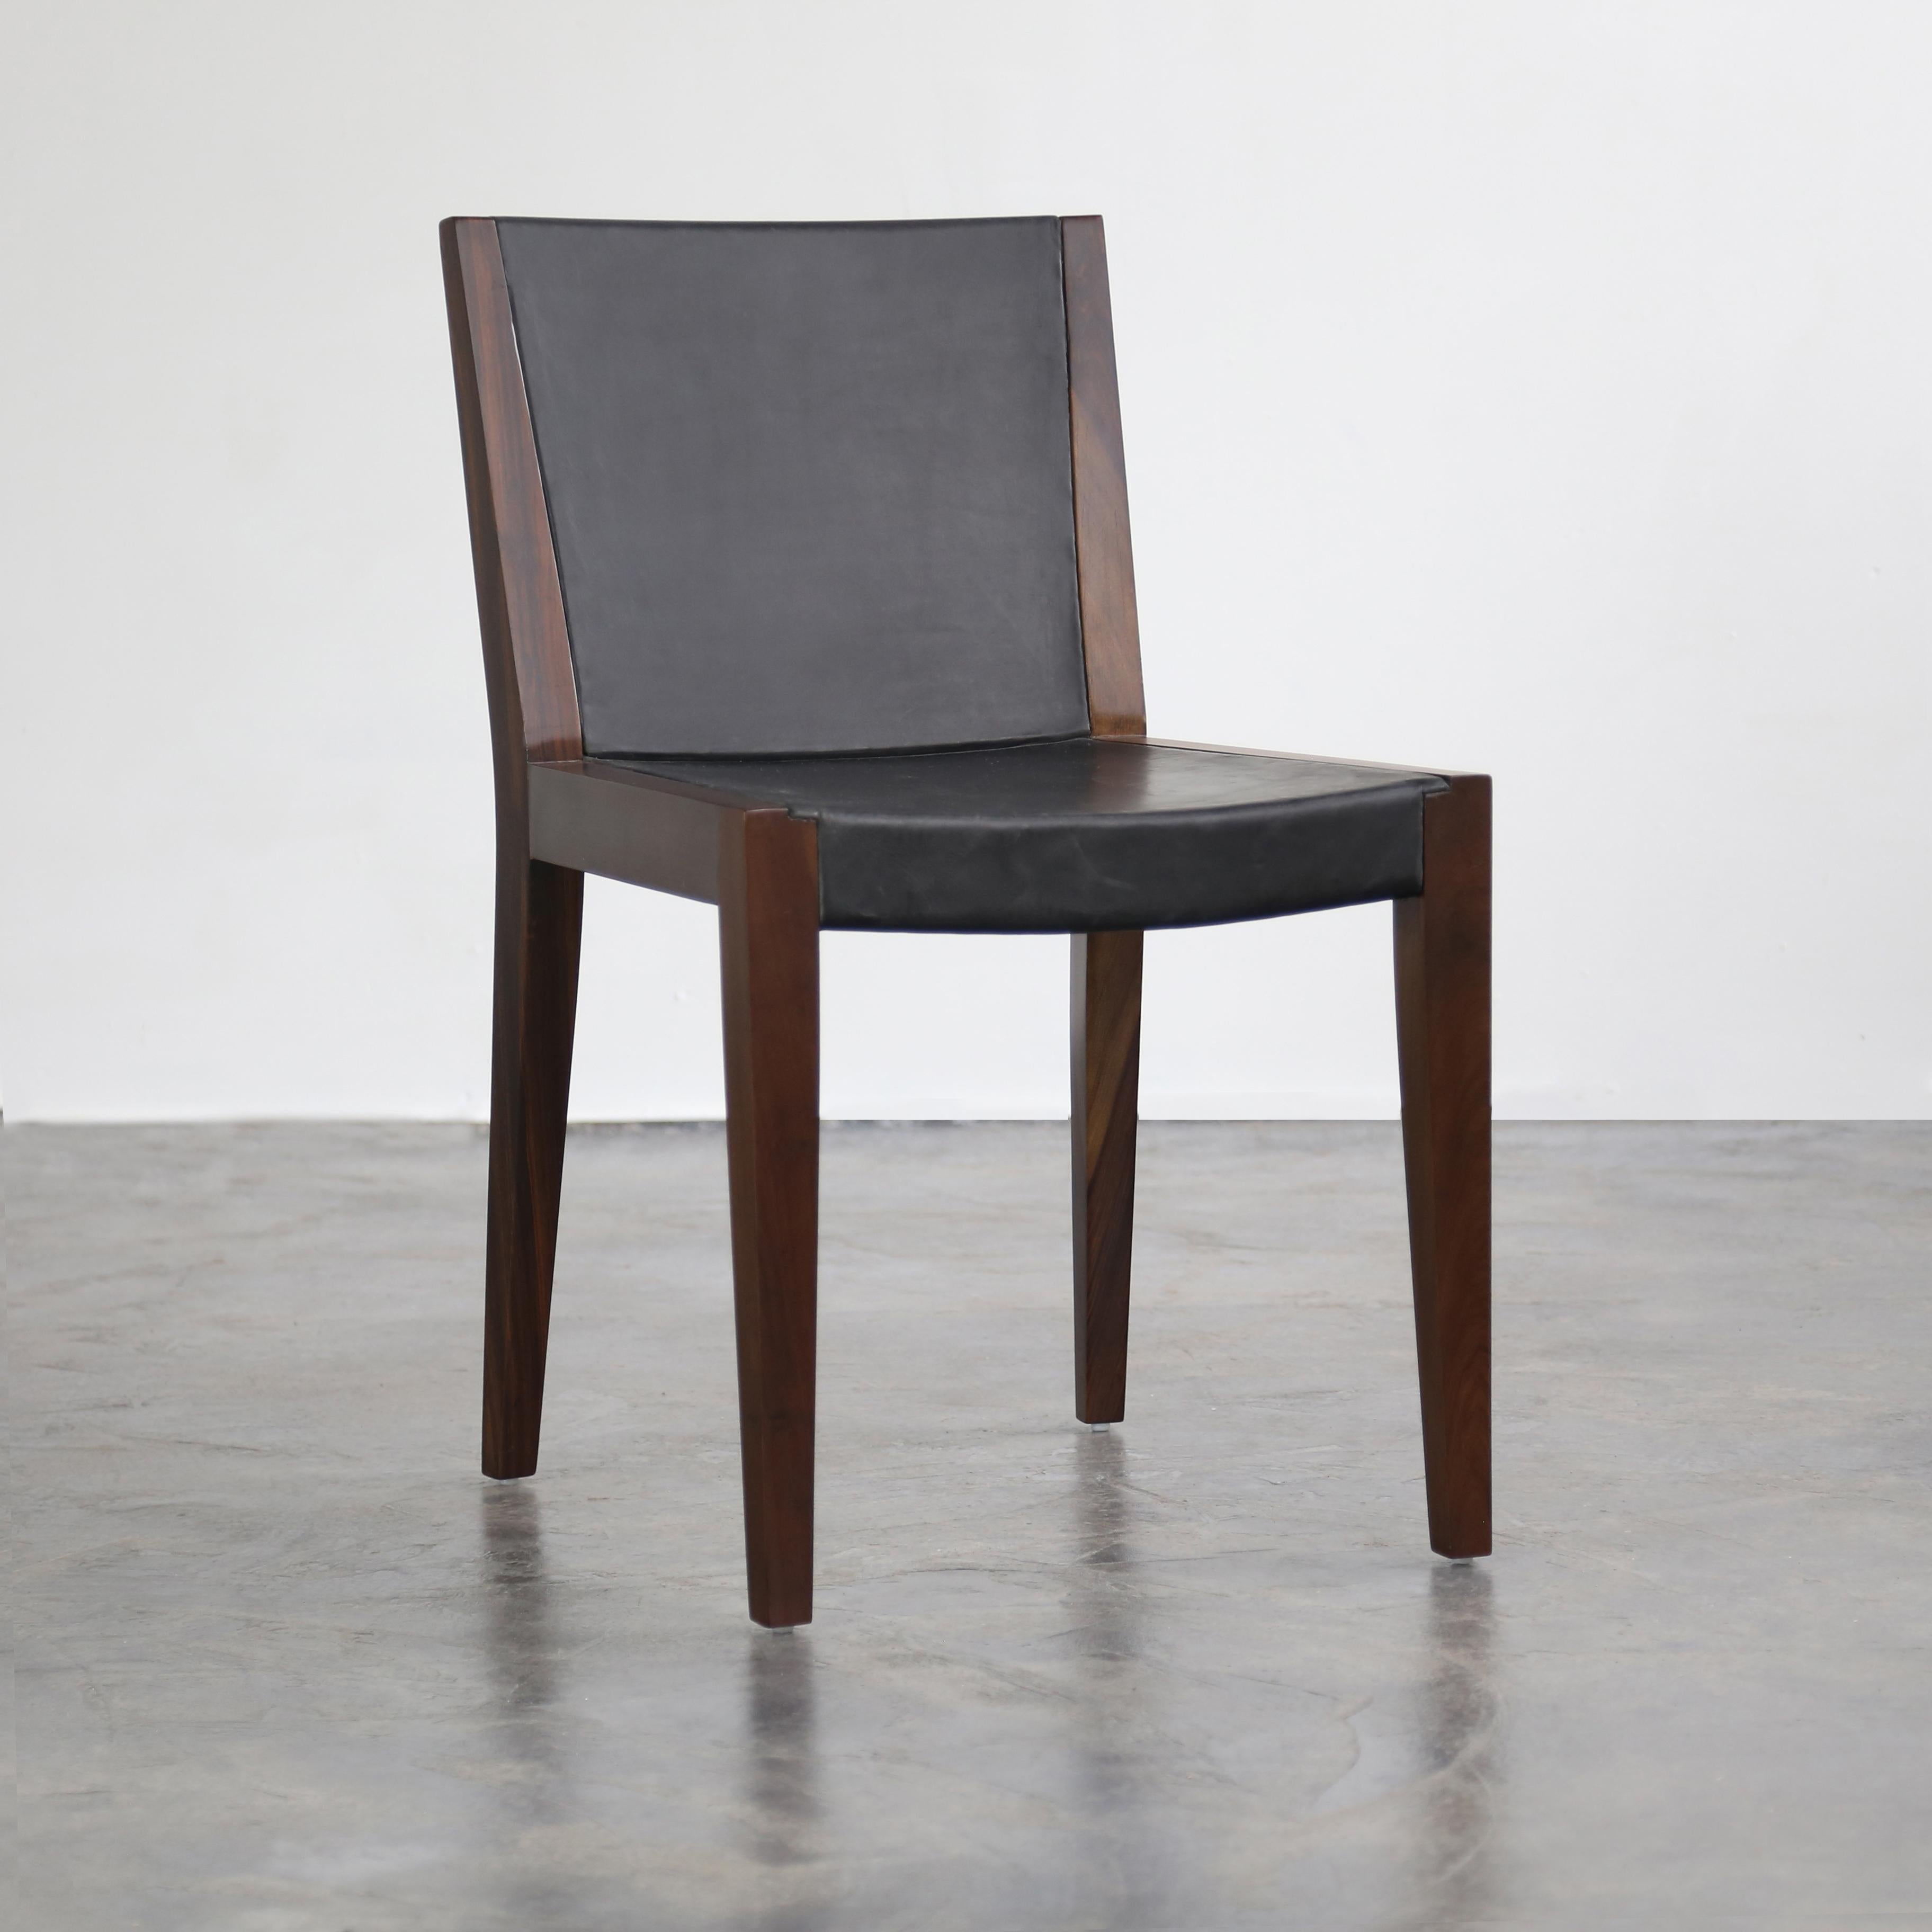 Der Giovanni Chair ist eine ausgesprochen moderne Interpretation traditioneller Holzbearbeitungsmethoden. Der sanft geschwungene Massivholzrahmen ist teilweise mit dem Leder Ihrer Wahl ummantelt, so dass ein subtiler Dialog zwischen diesen beiden